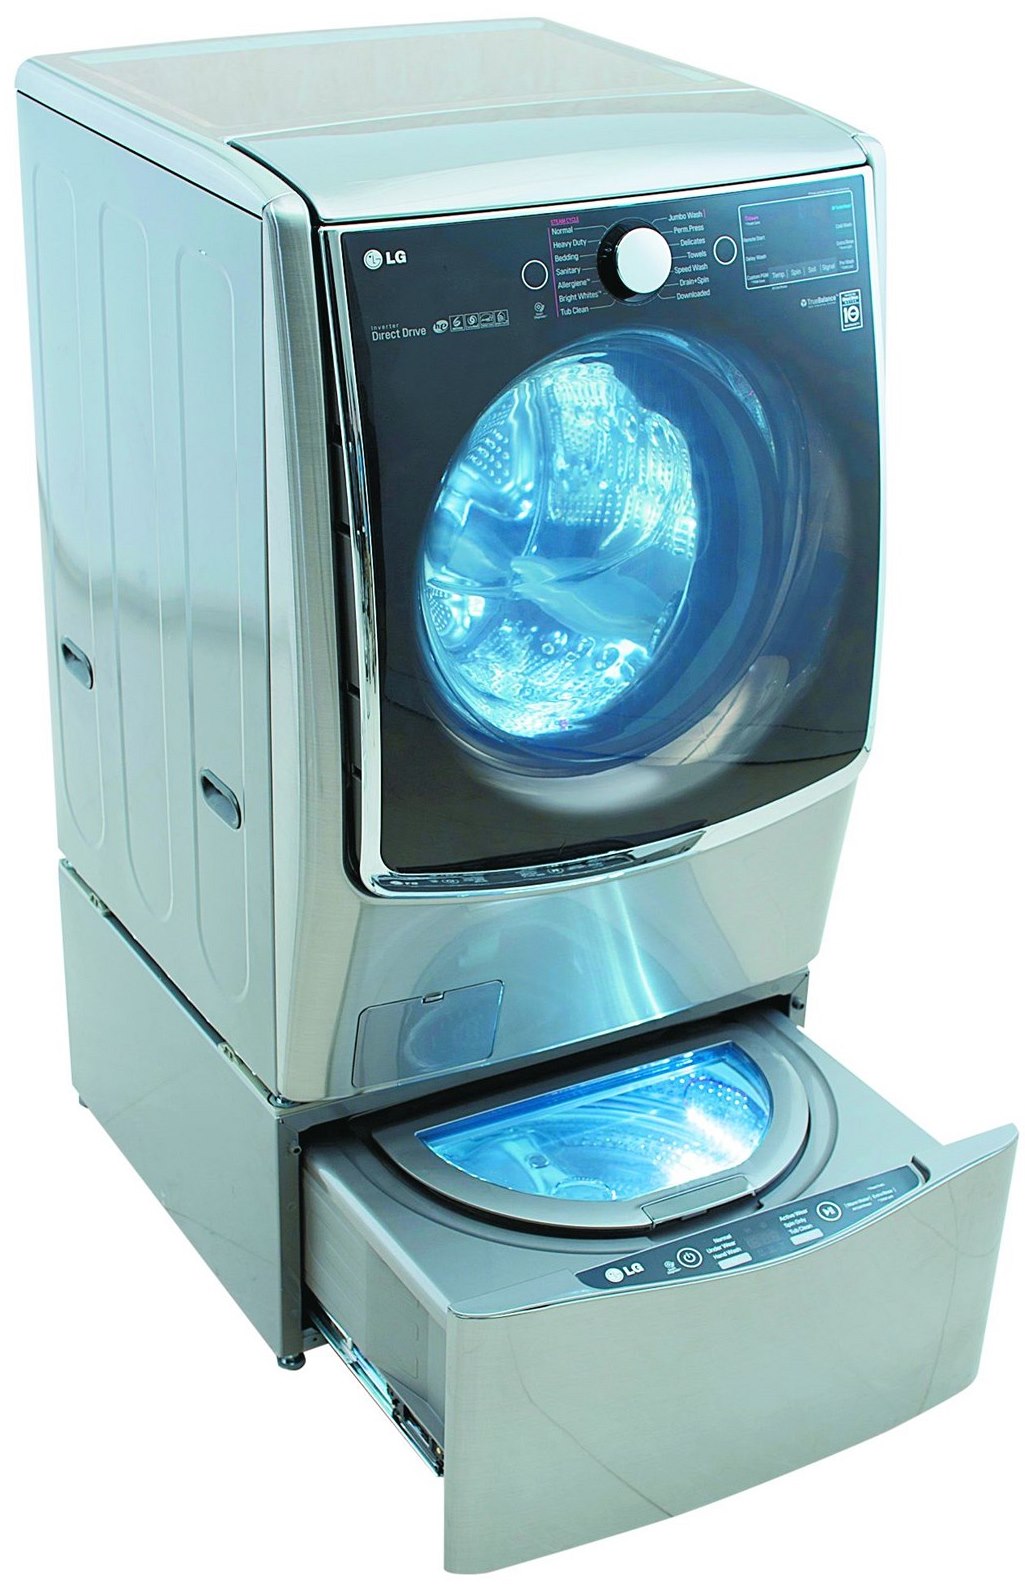 Fotogalerie: Pračka od LG má v soklu umístěný ještě jeden malý buben určený  pro praní malého...